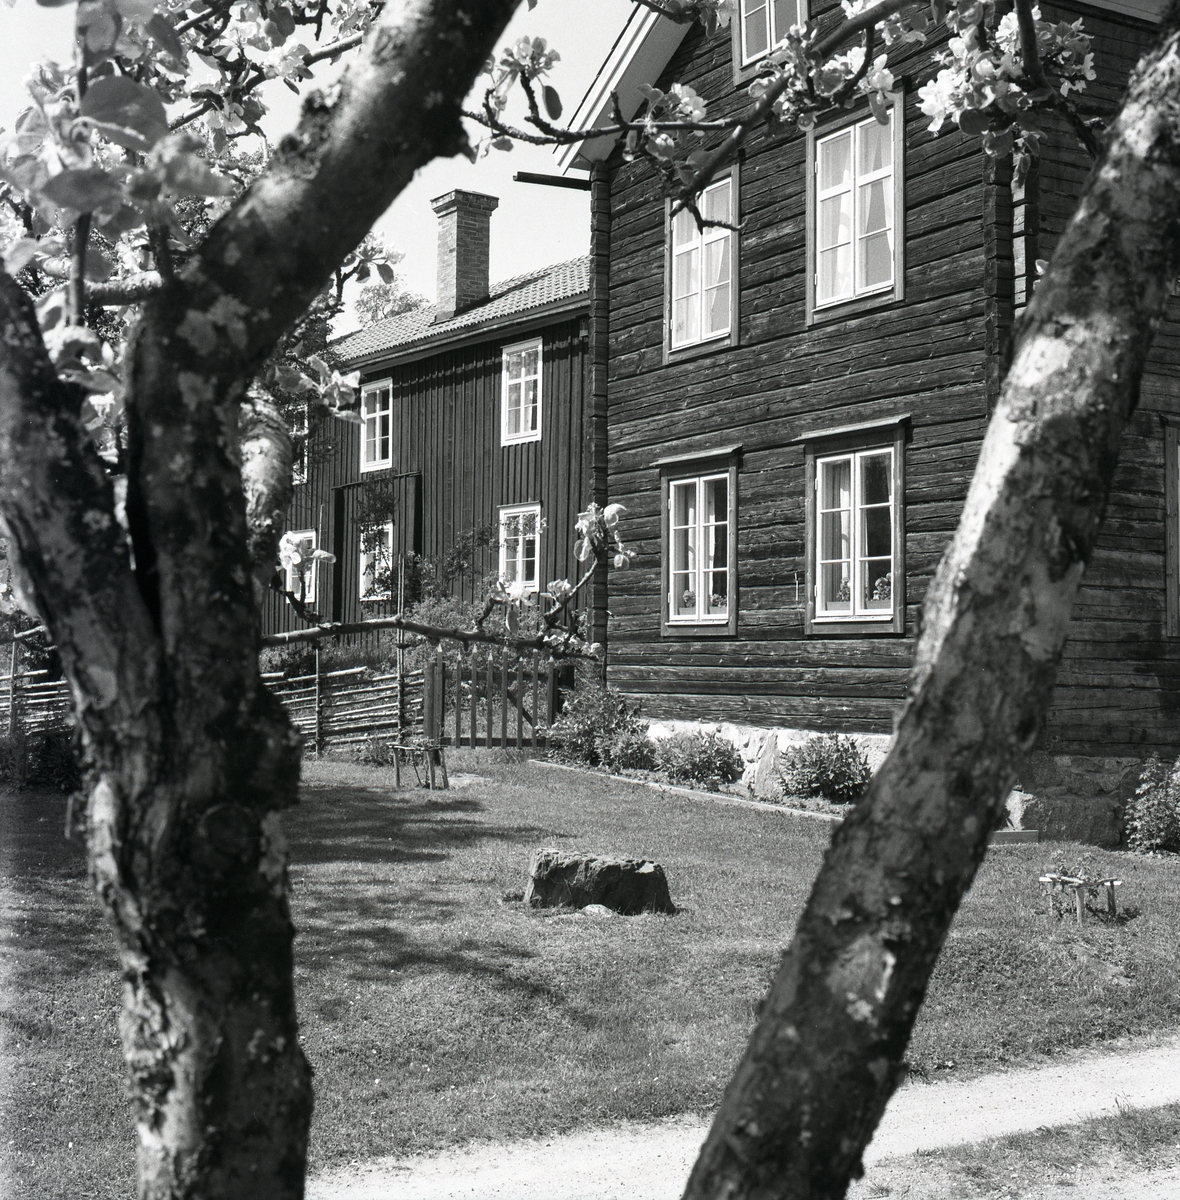 Mellan två äppelträdsgrenar ser man ett stort timrat hus med ett tegeltak och skorsten, Hembygdsbyn 1975.